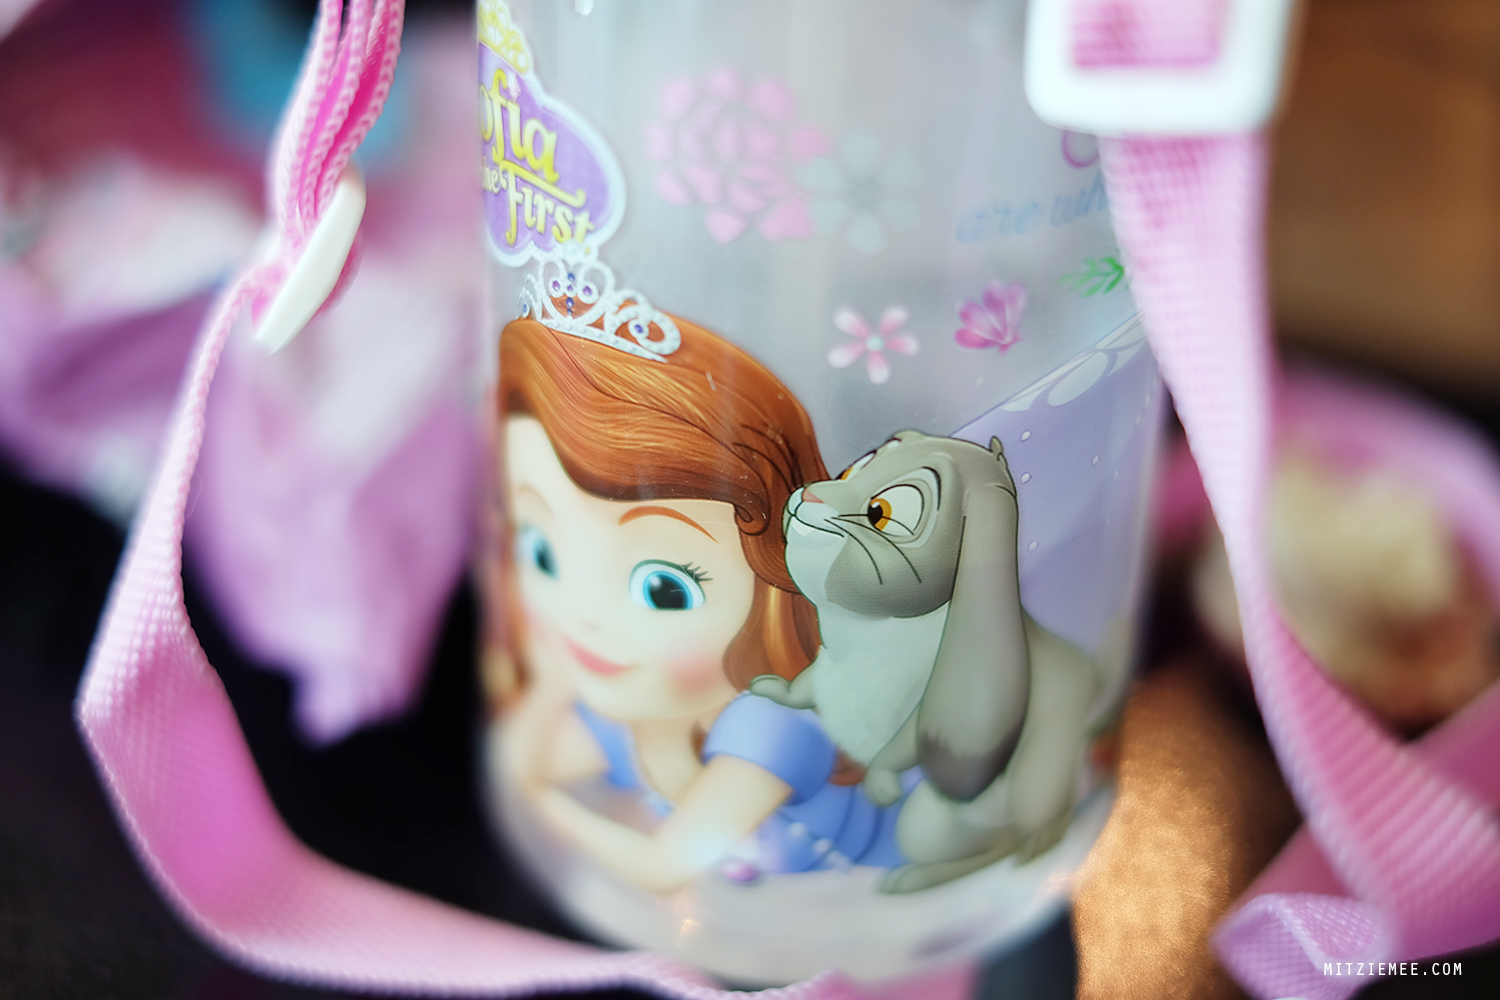 Disney mug